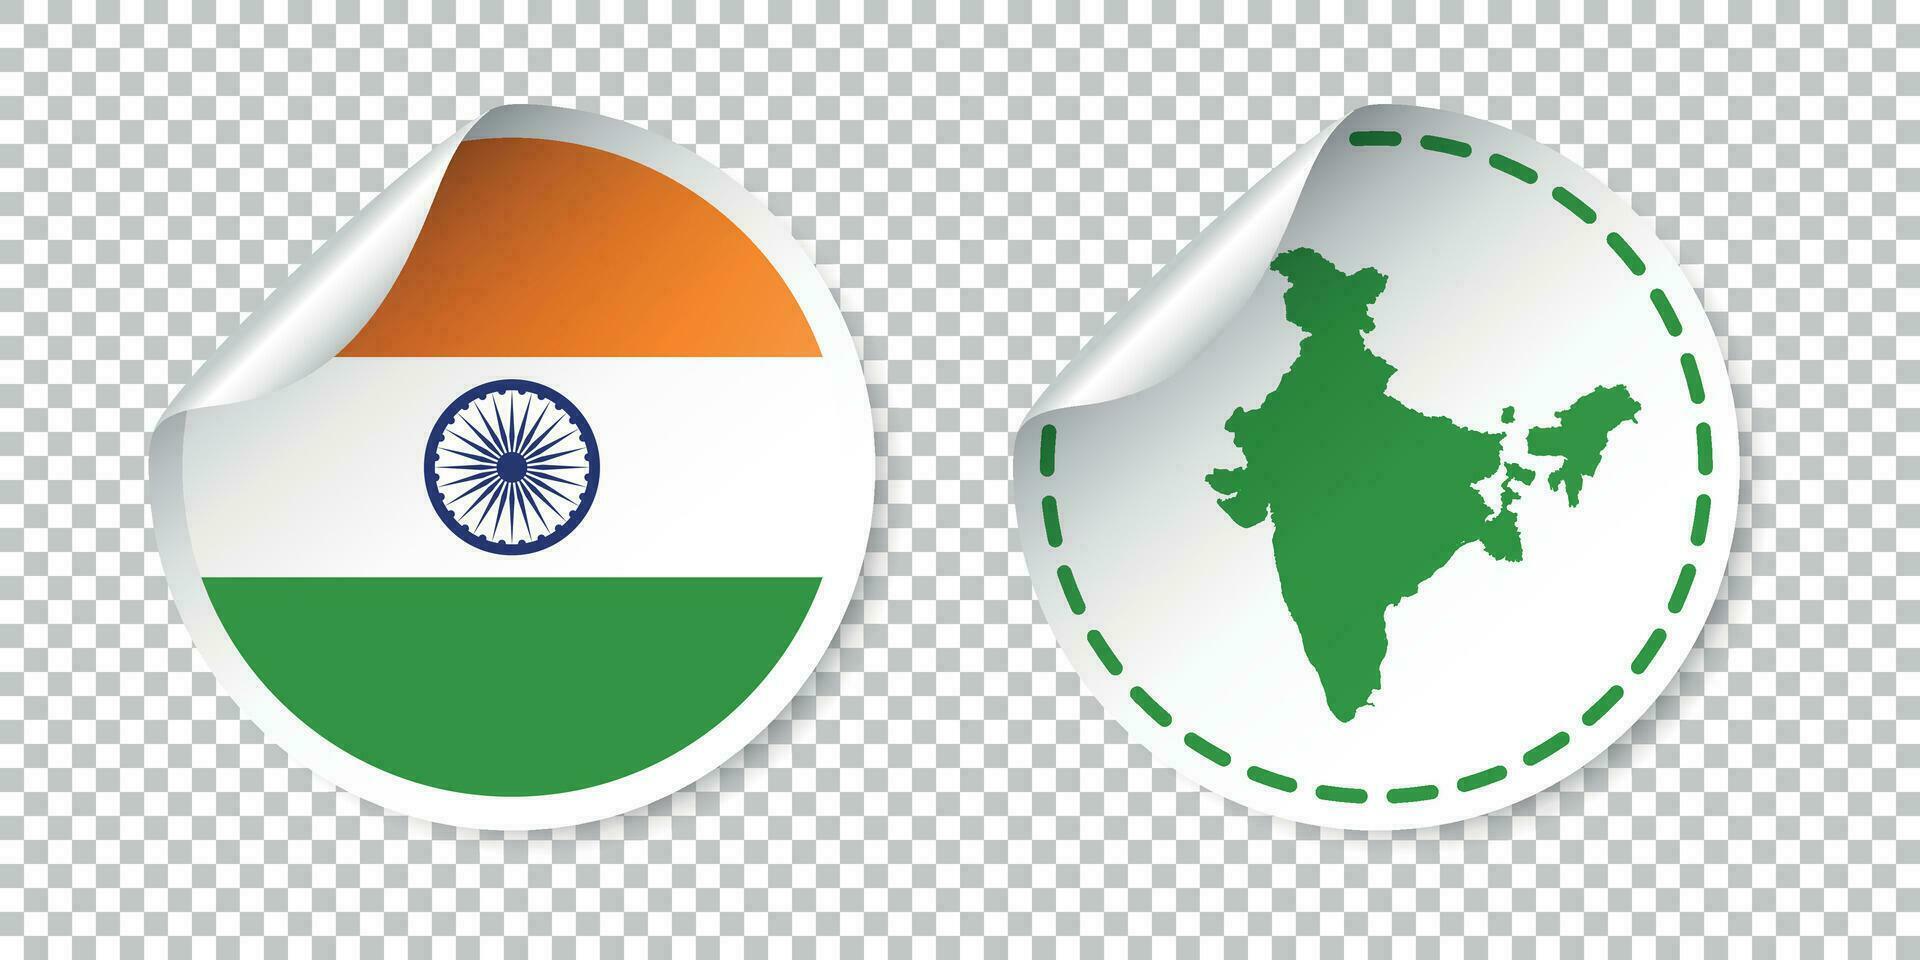 India etichetta con bandiera e carta geografica. etichetta, il giro etichetta con nazione. vettore illustrazione su isolato sfondo.